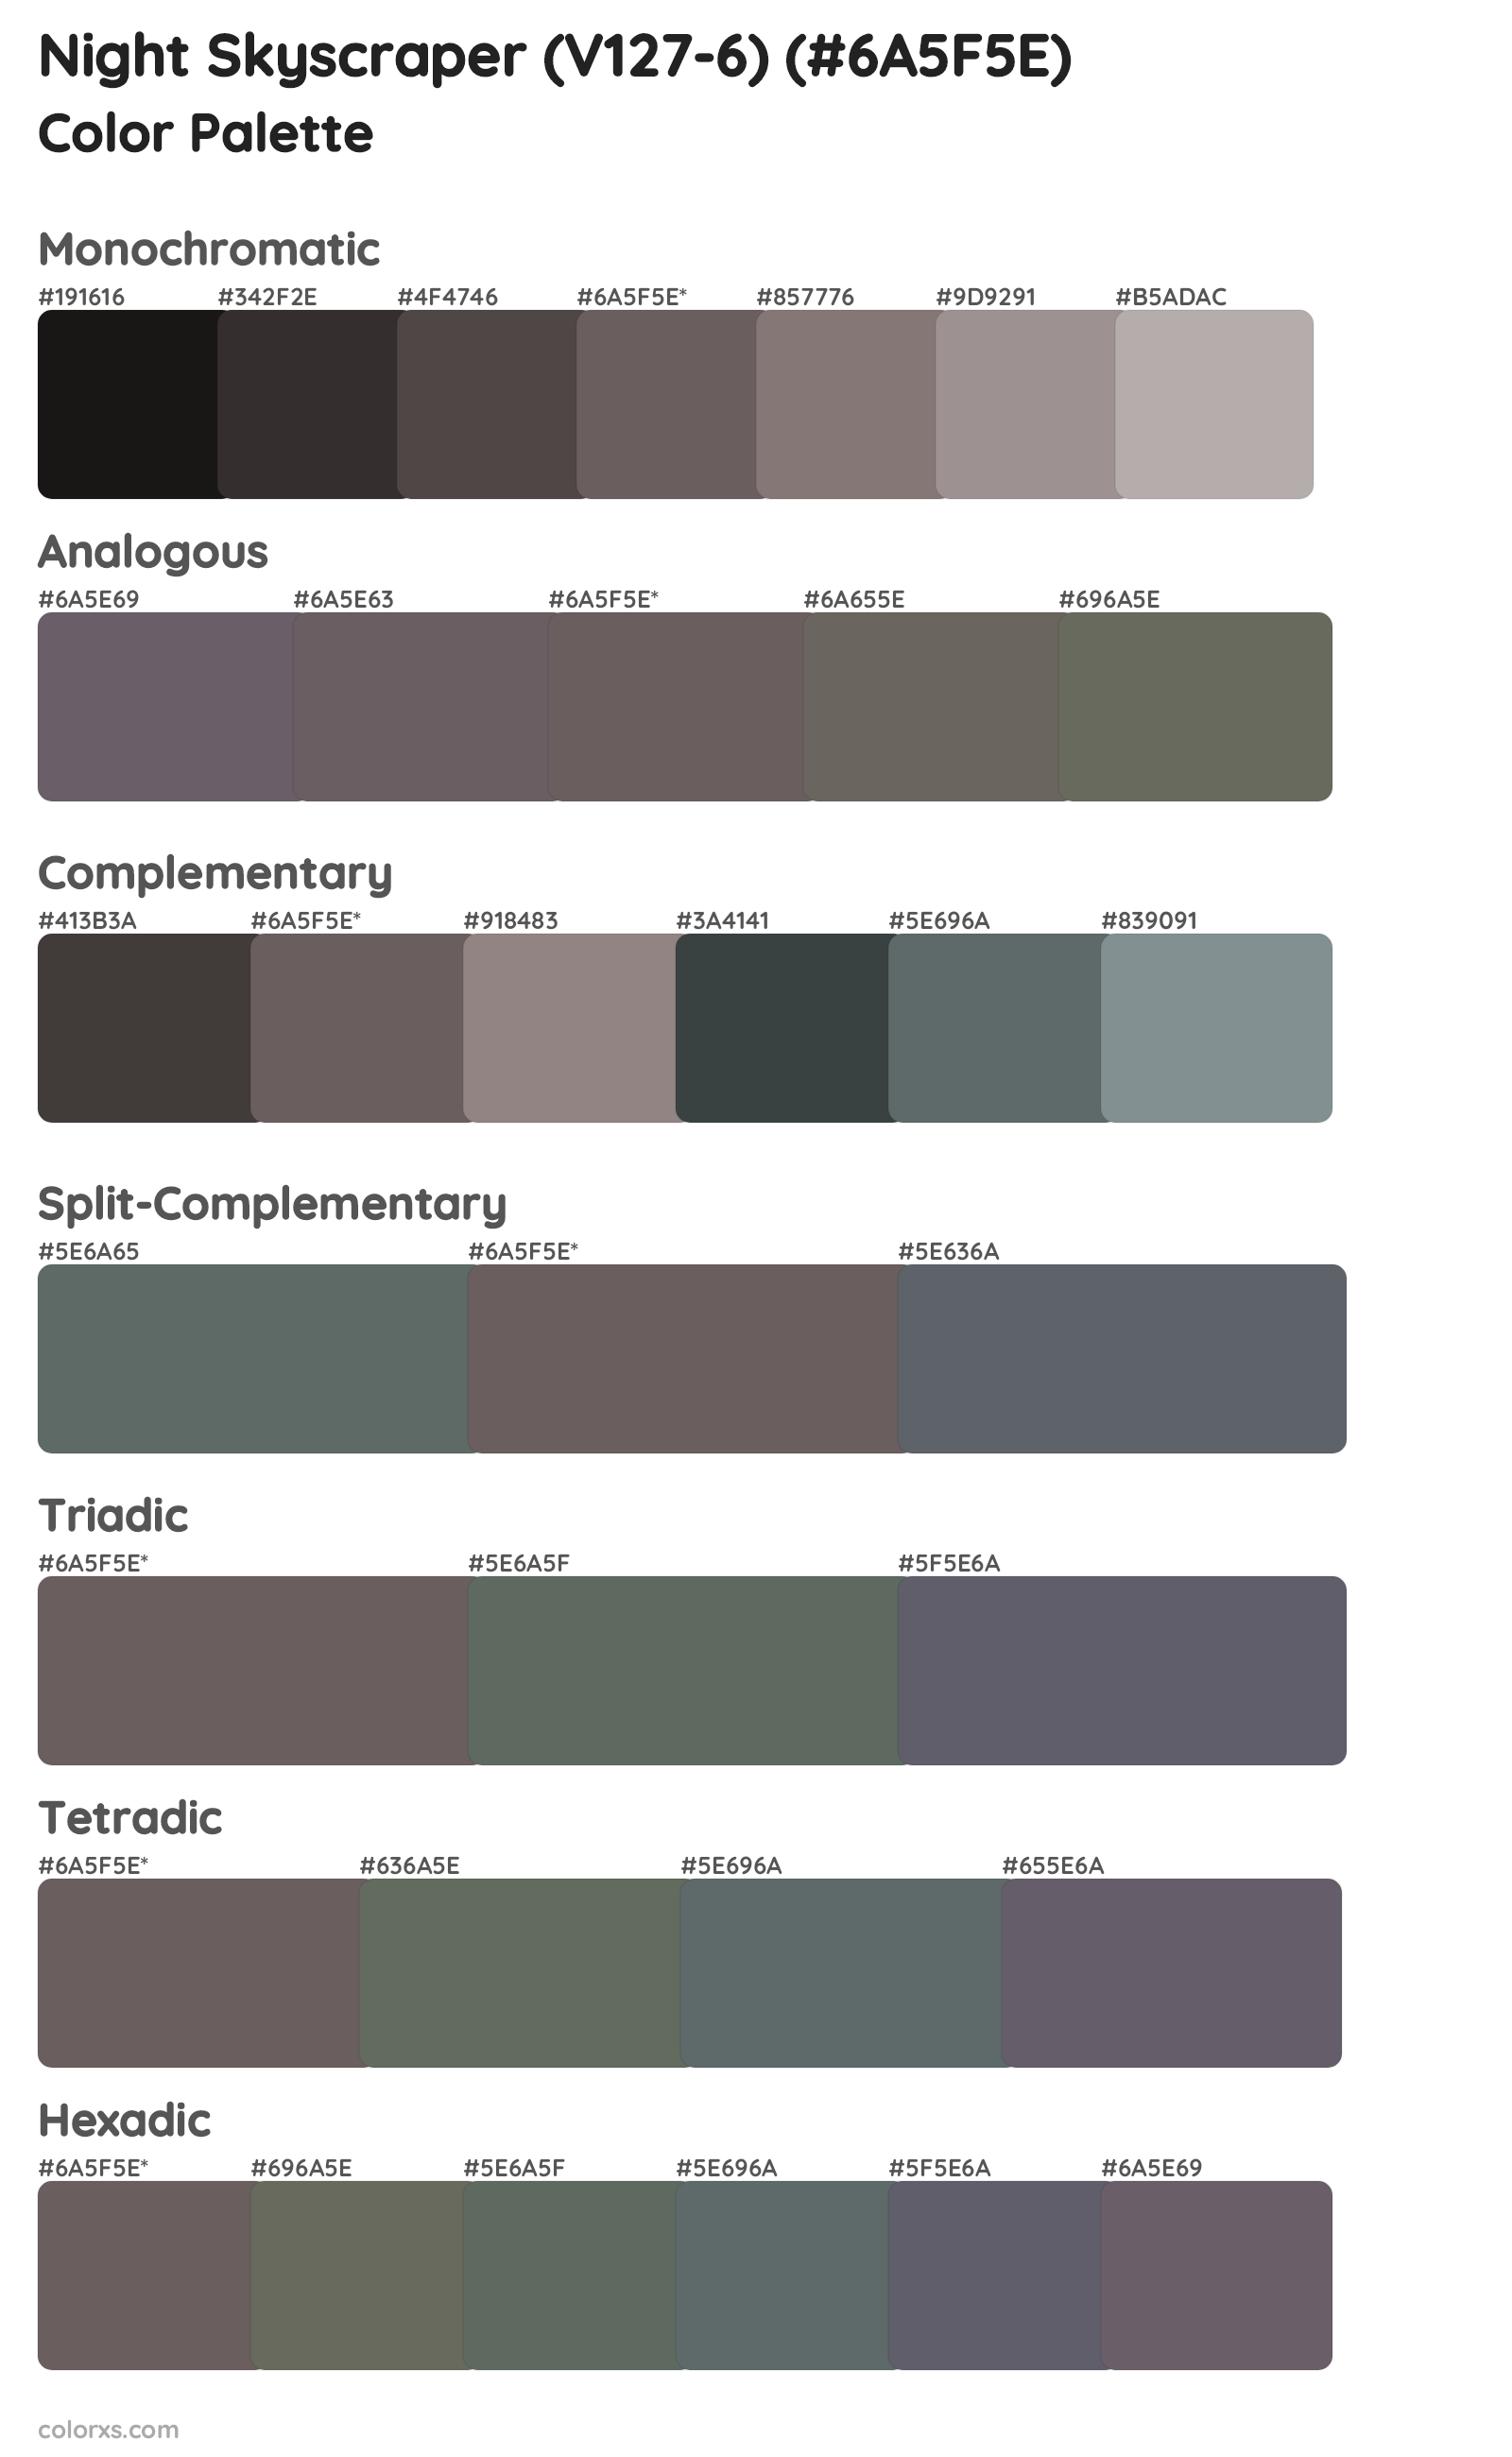 Night Skyscraper (V127-6) Color Scheme Palettes